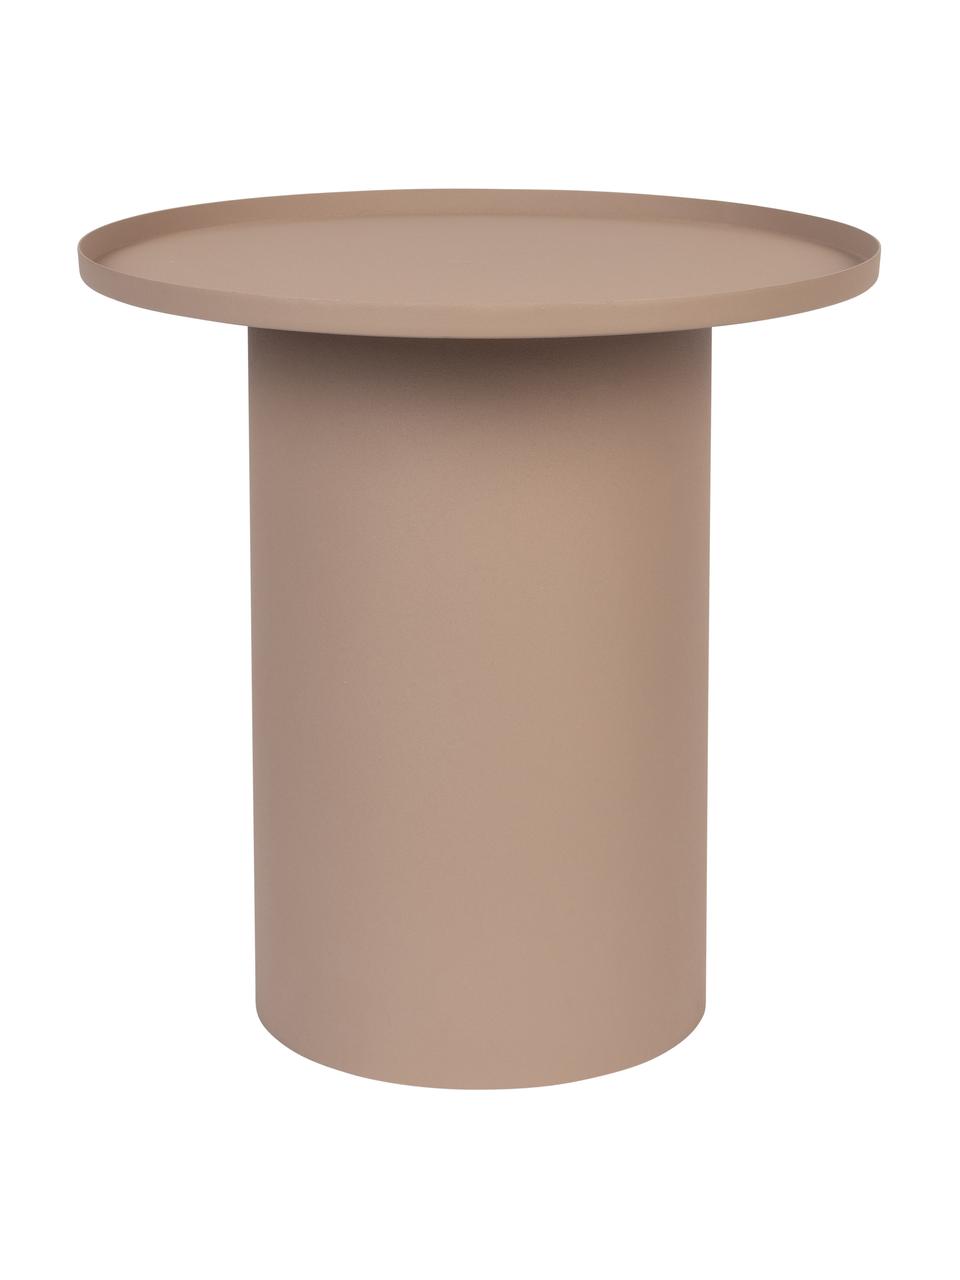 Table d'appoint ronde en métal Sverre, Métal, revêtement par poudre, Vieux rose, Ø 46 x haut. 45 cm